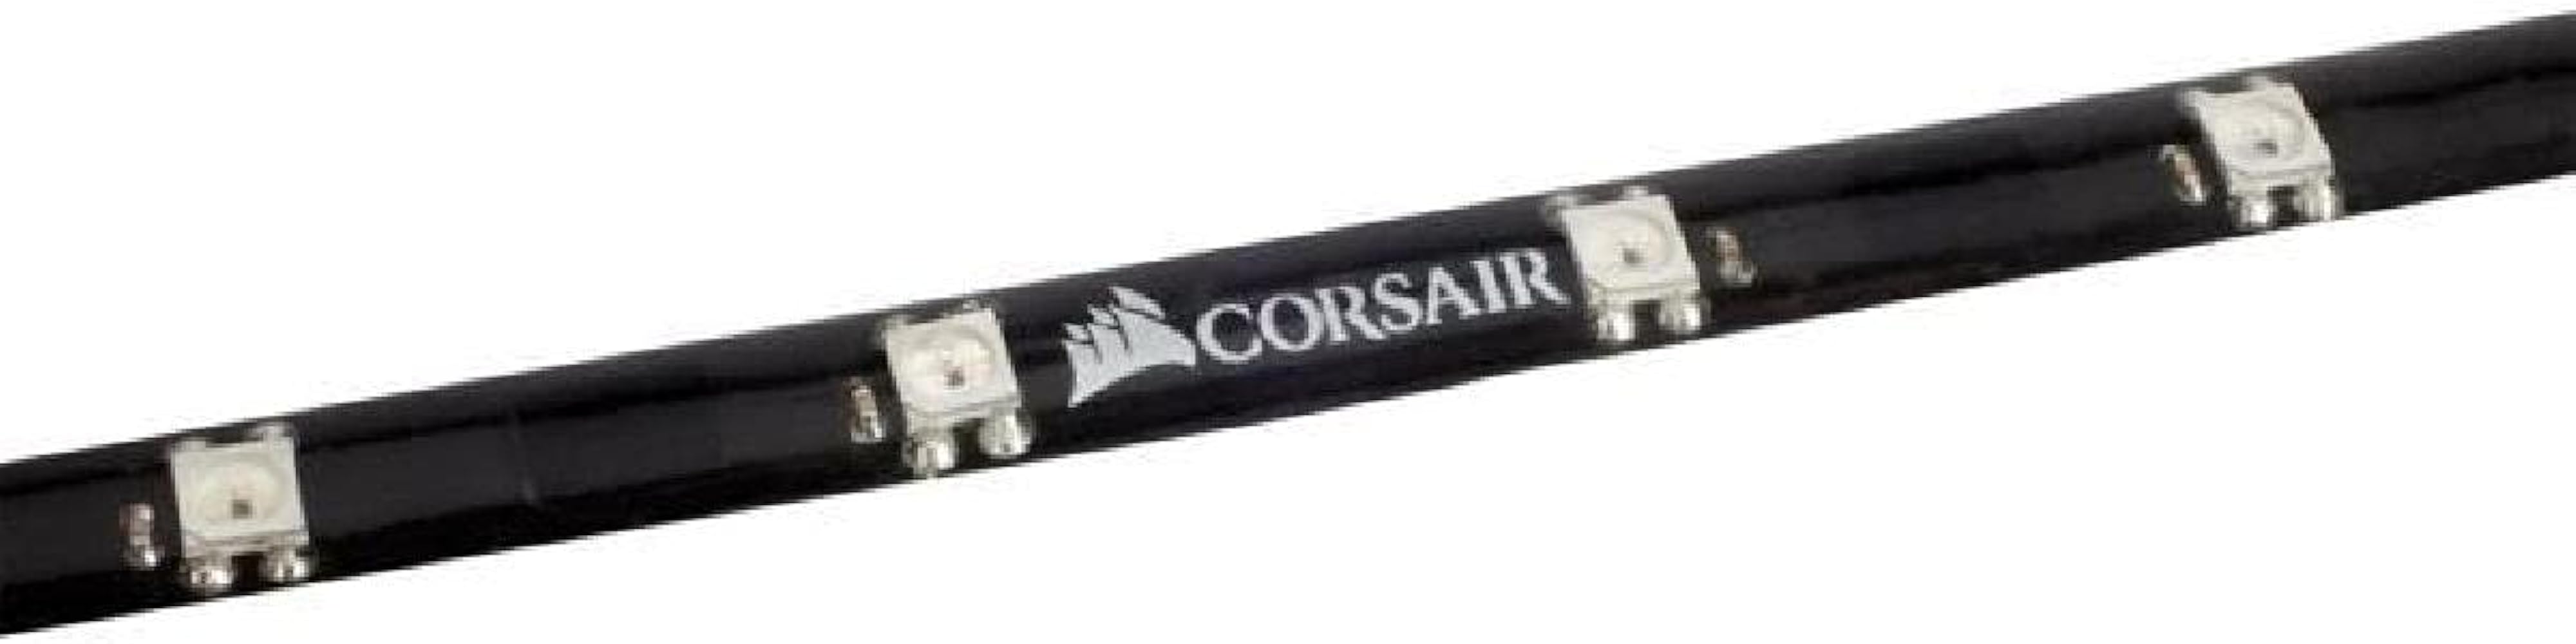 Corsair RGB LED Lighting PRO Expansion Kit (CL-8930002),Black